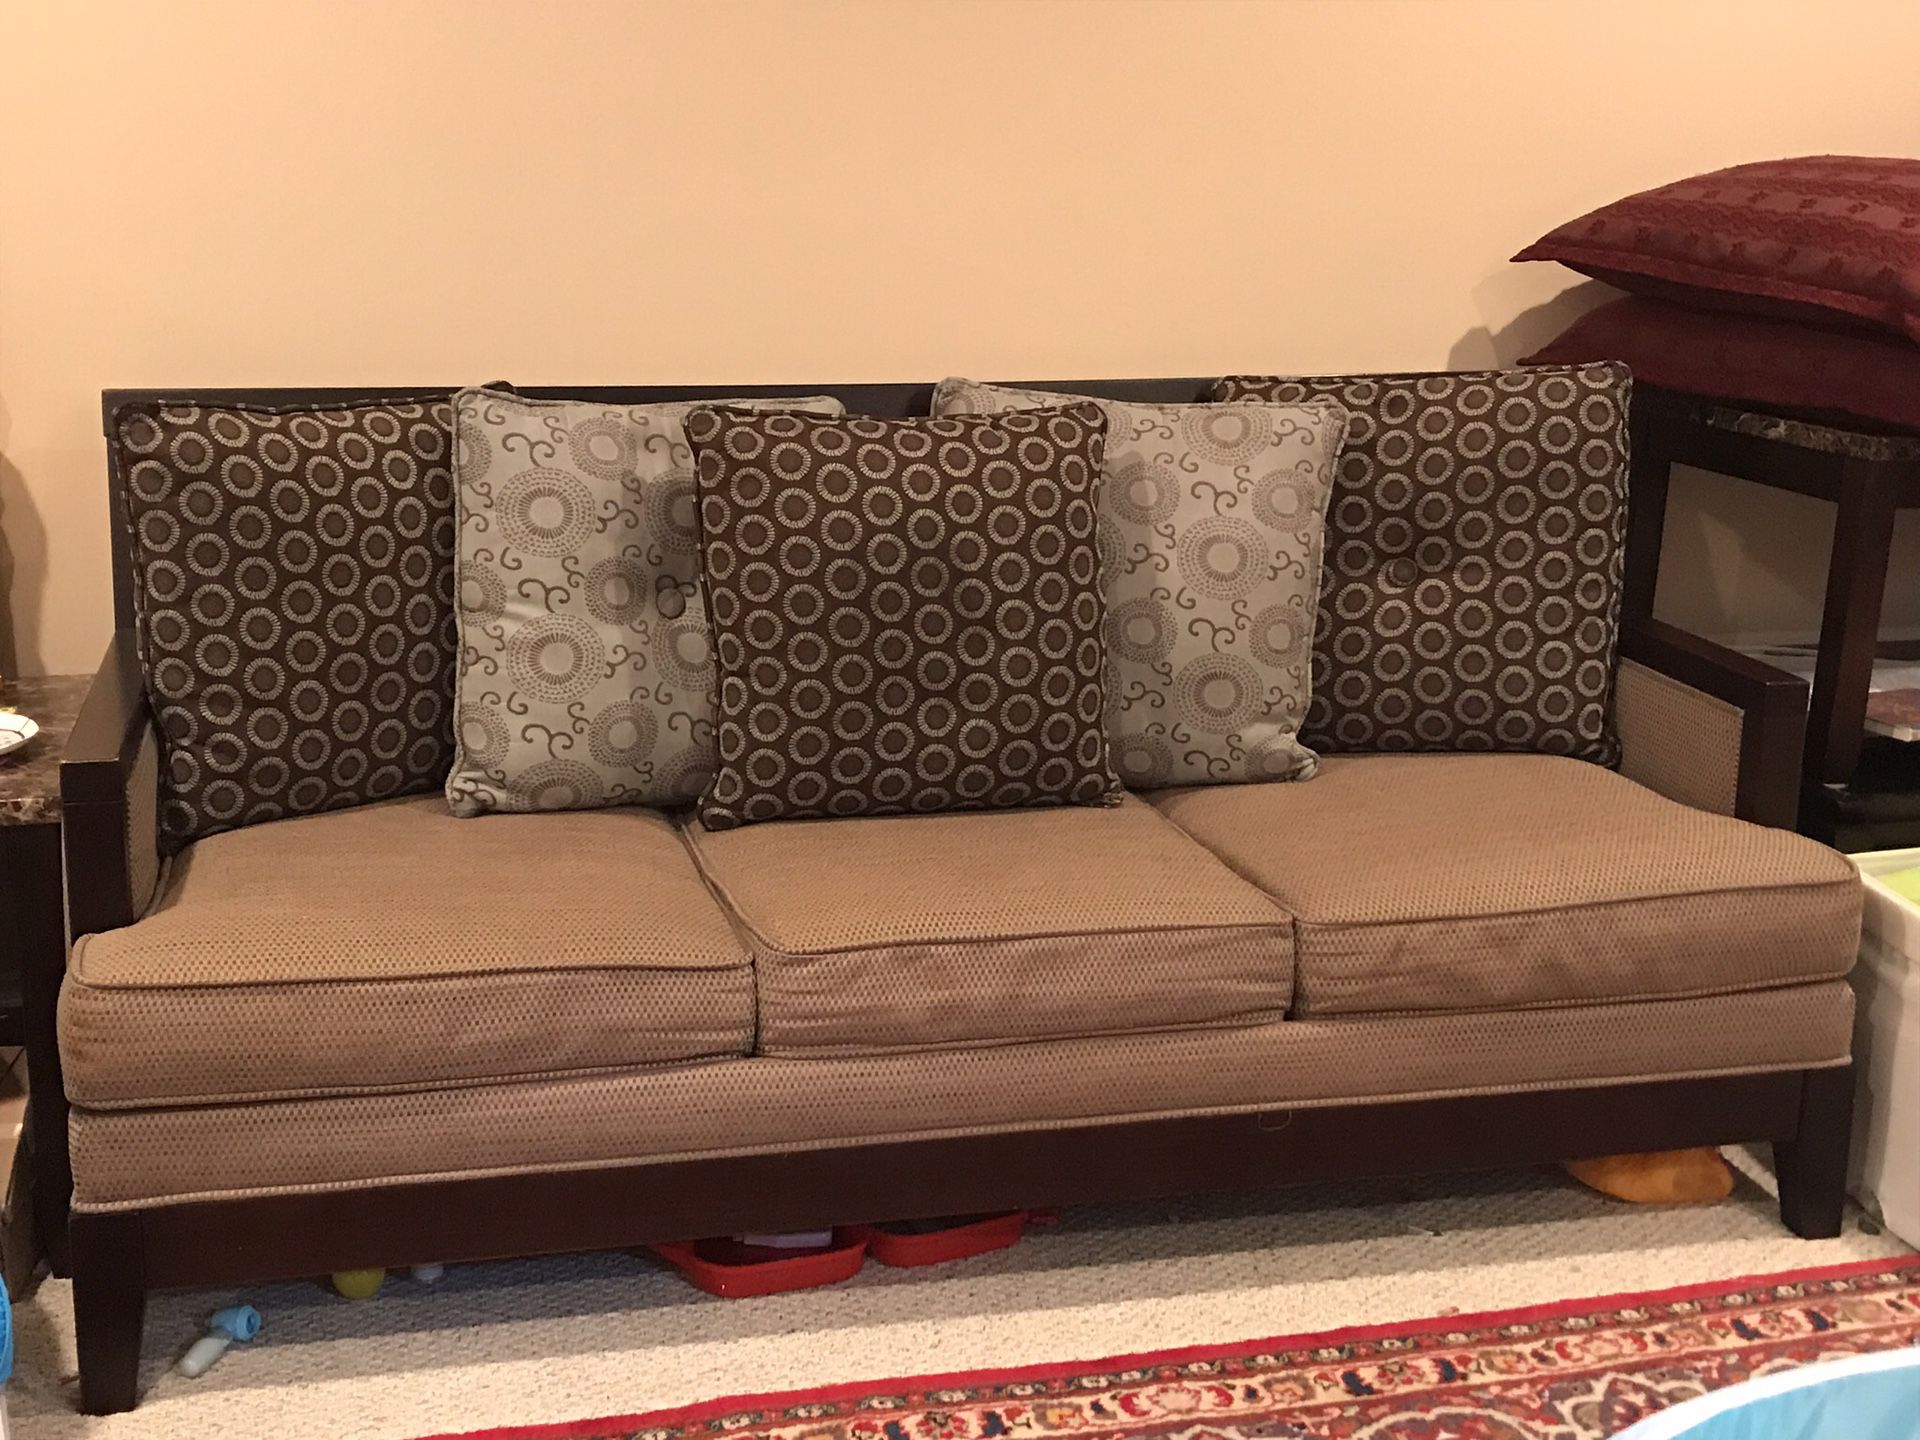 Living room set for sale $275